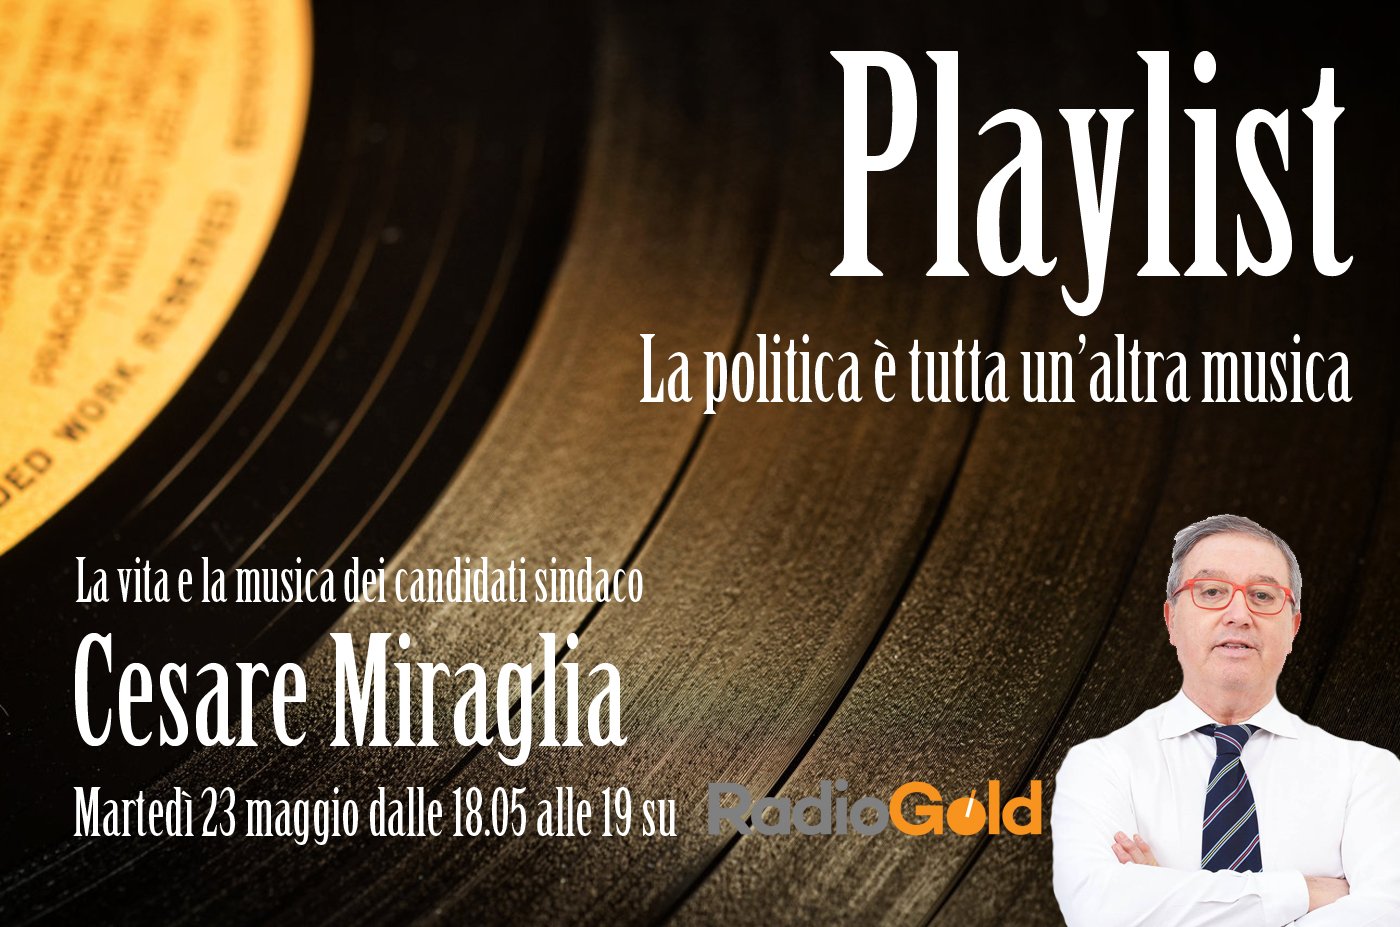 La Playlist di Cesare Miraglia